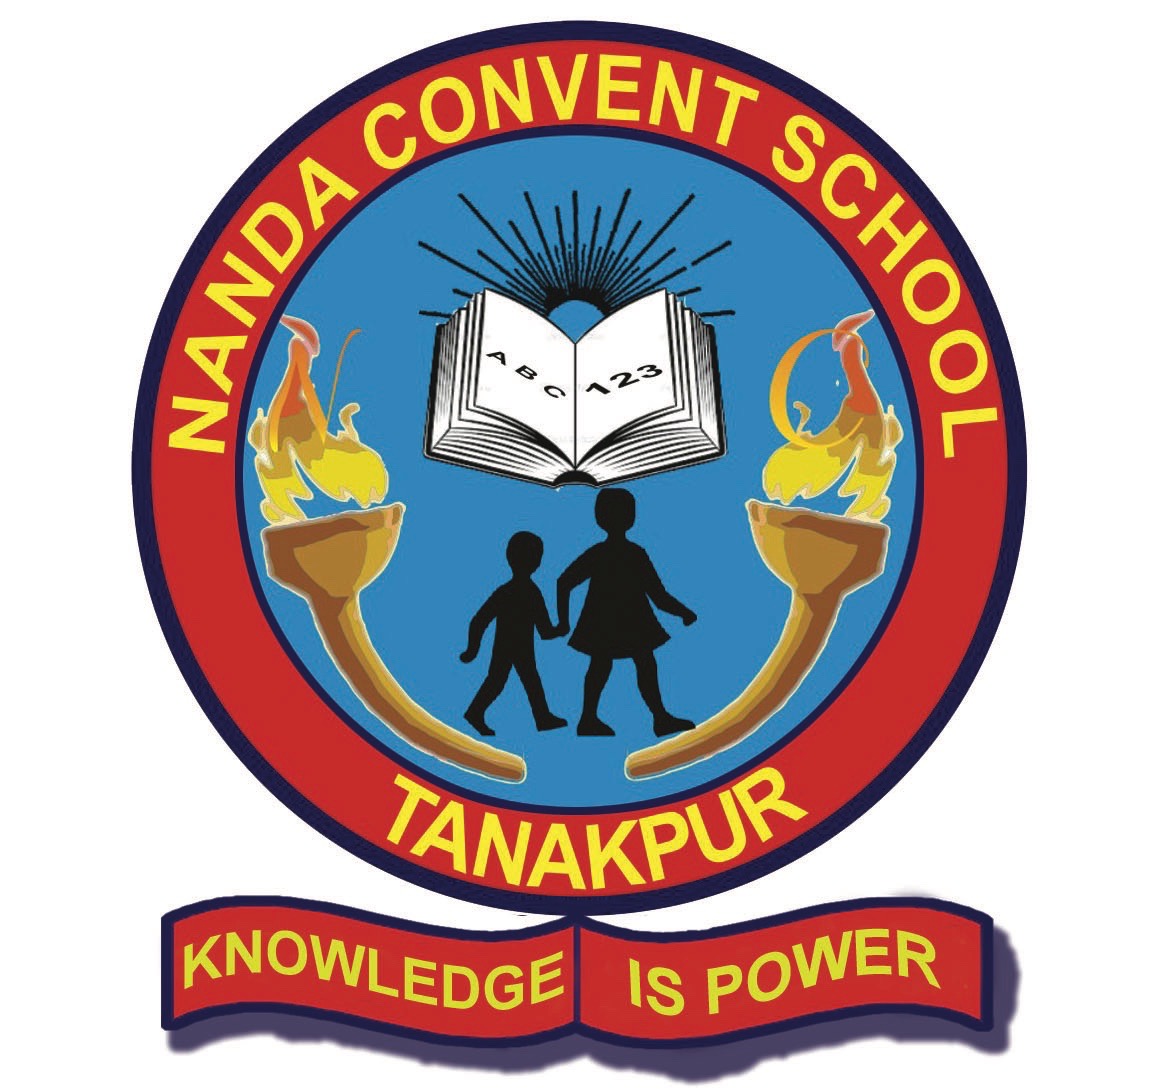 Nanda Convent School|Schools|Education